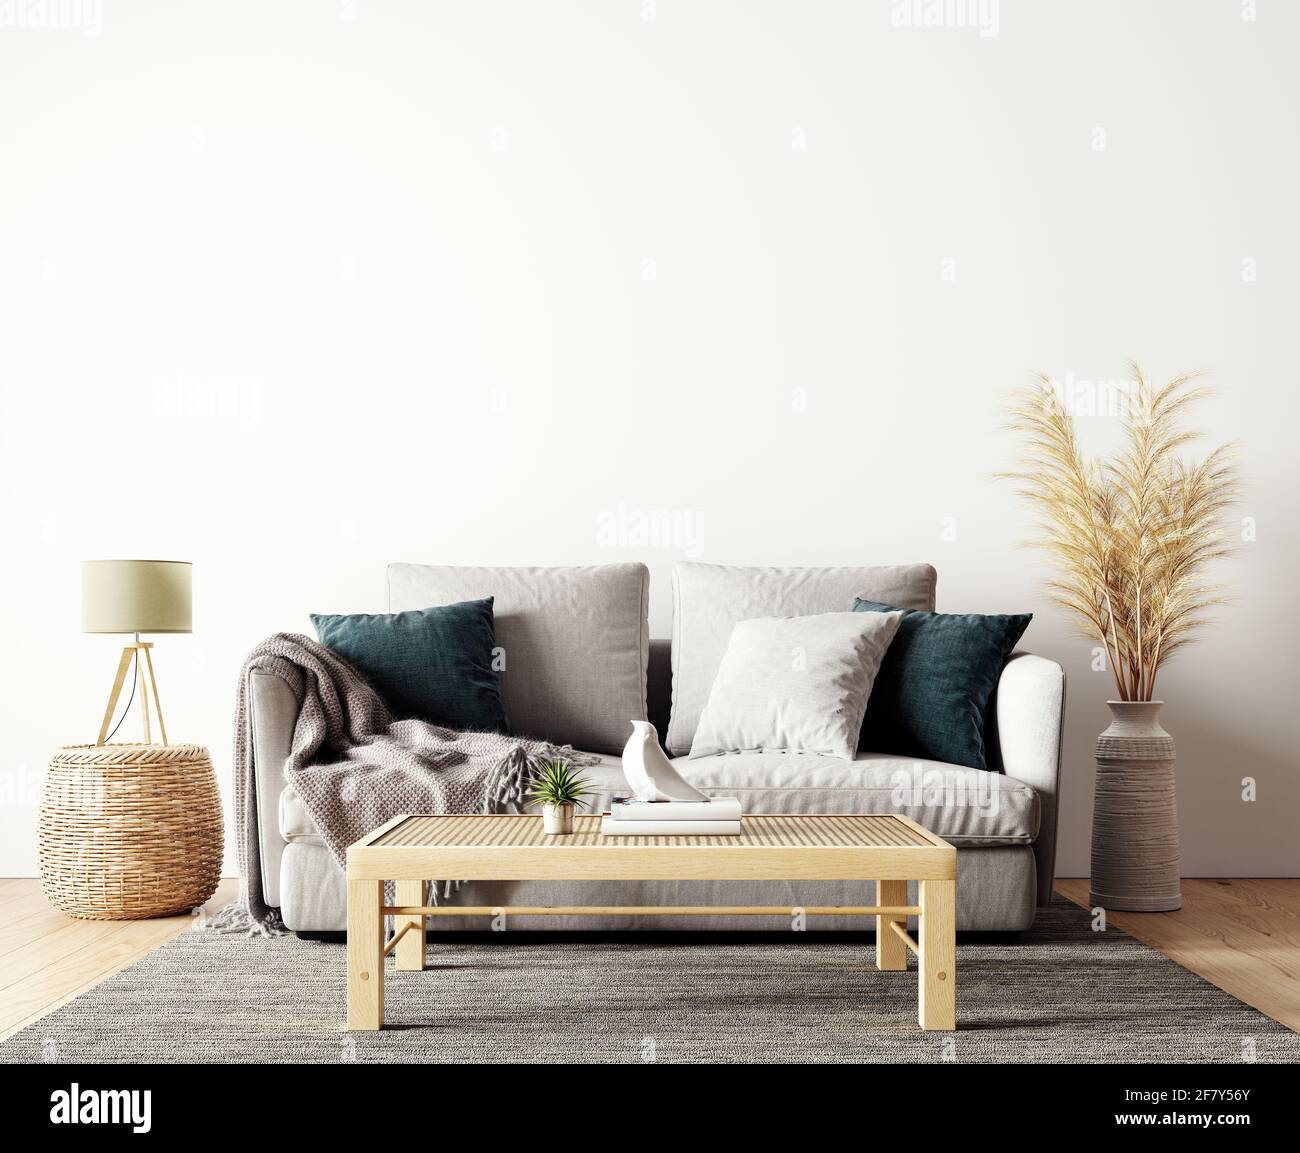 Interni dal design moderno del soggiorno in colori naturali con decorazione di piante asciutte e vuoto bianco mock su sfondo parete Rendering 3D Foto Stock